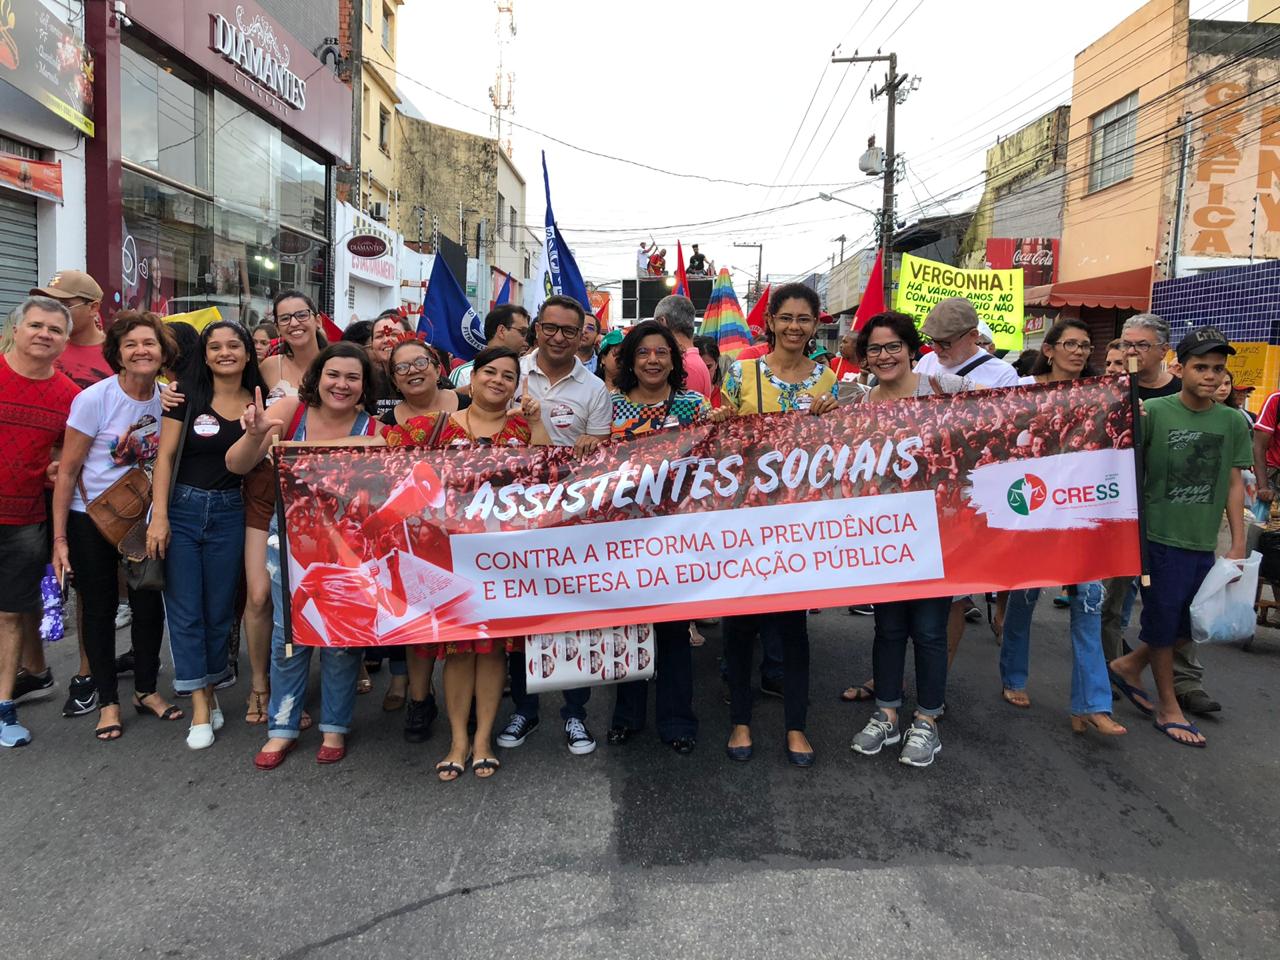 CRESS Sergipe reforça luta contra reforma da previdência durante a greve geral